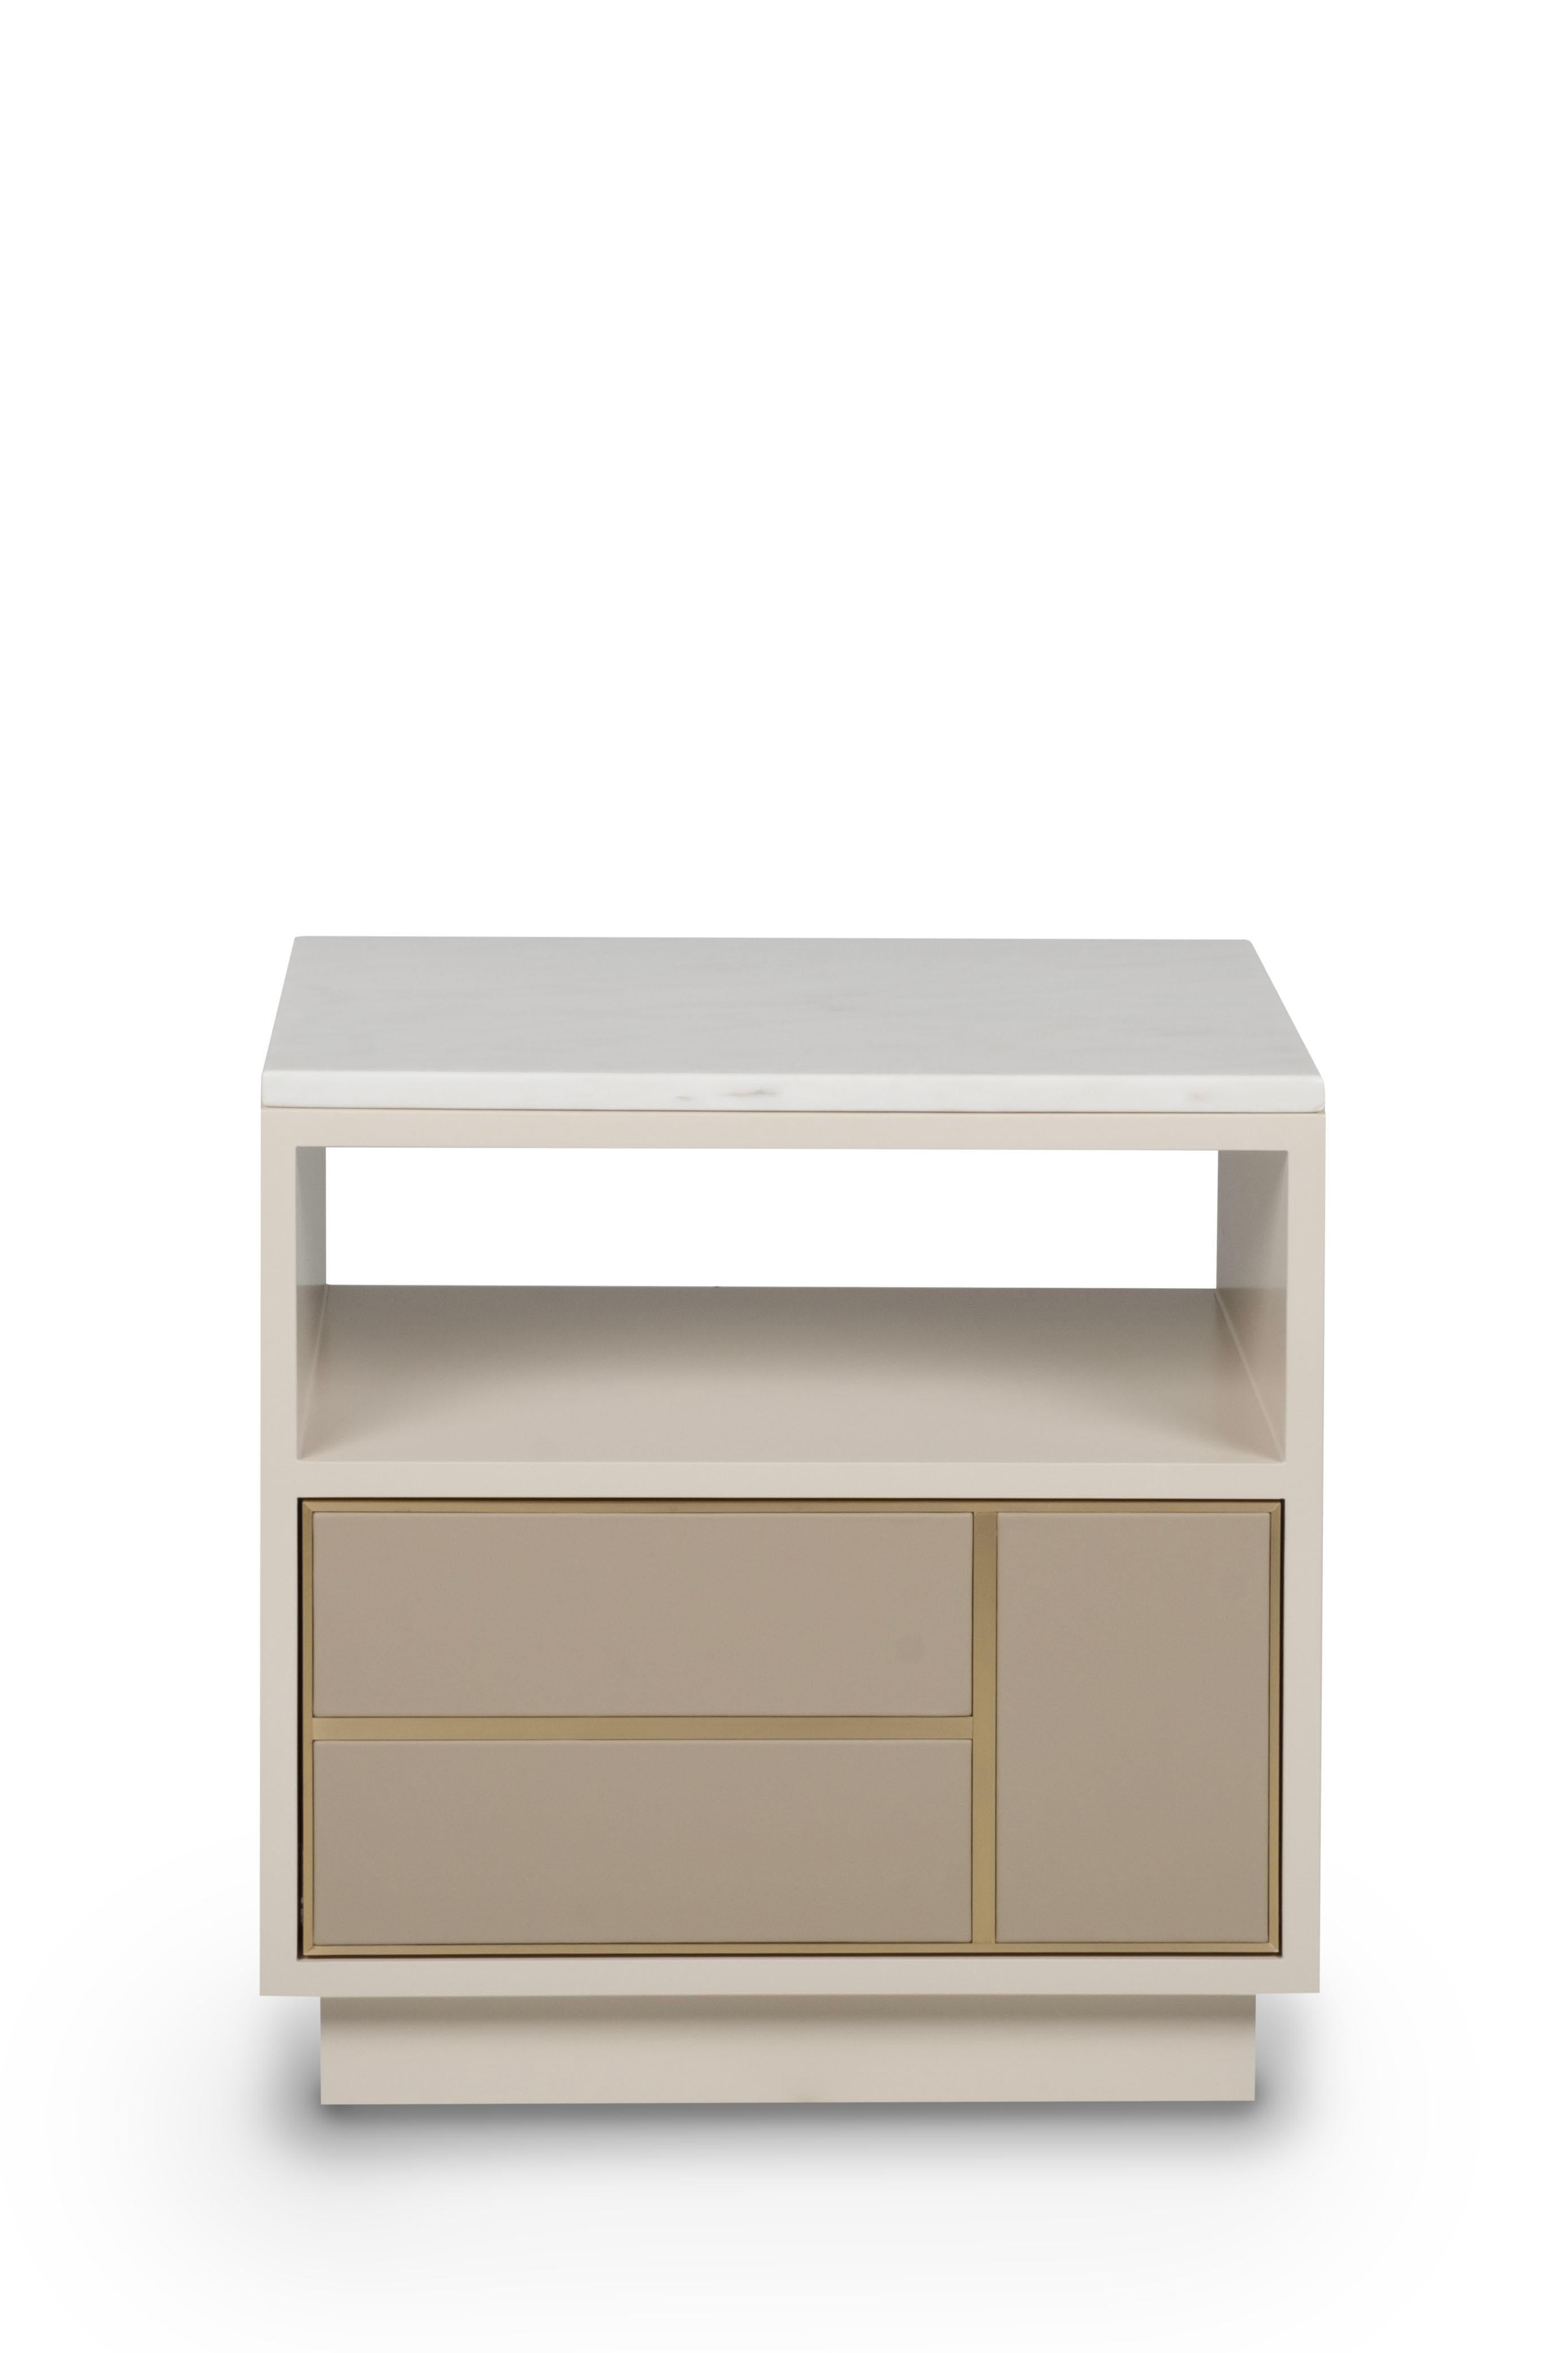 Jensen Nachttisch, Collection'S Contemporary, handgefertigt in Portugal - Europa von Greenapple.

Der Nachttisch Jensen bietet ein zeitloses Design für Ihre Komfortzone. Jensen ist ein beiger Nachttisch aus Holz, der den Raum aufwertet. Die